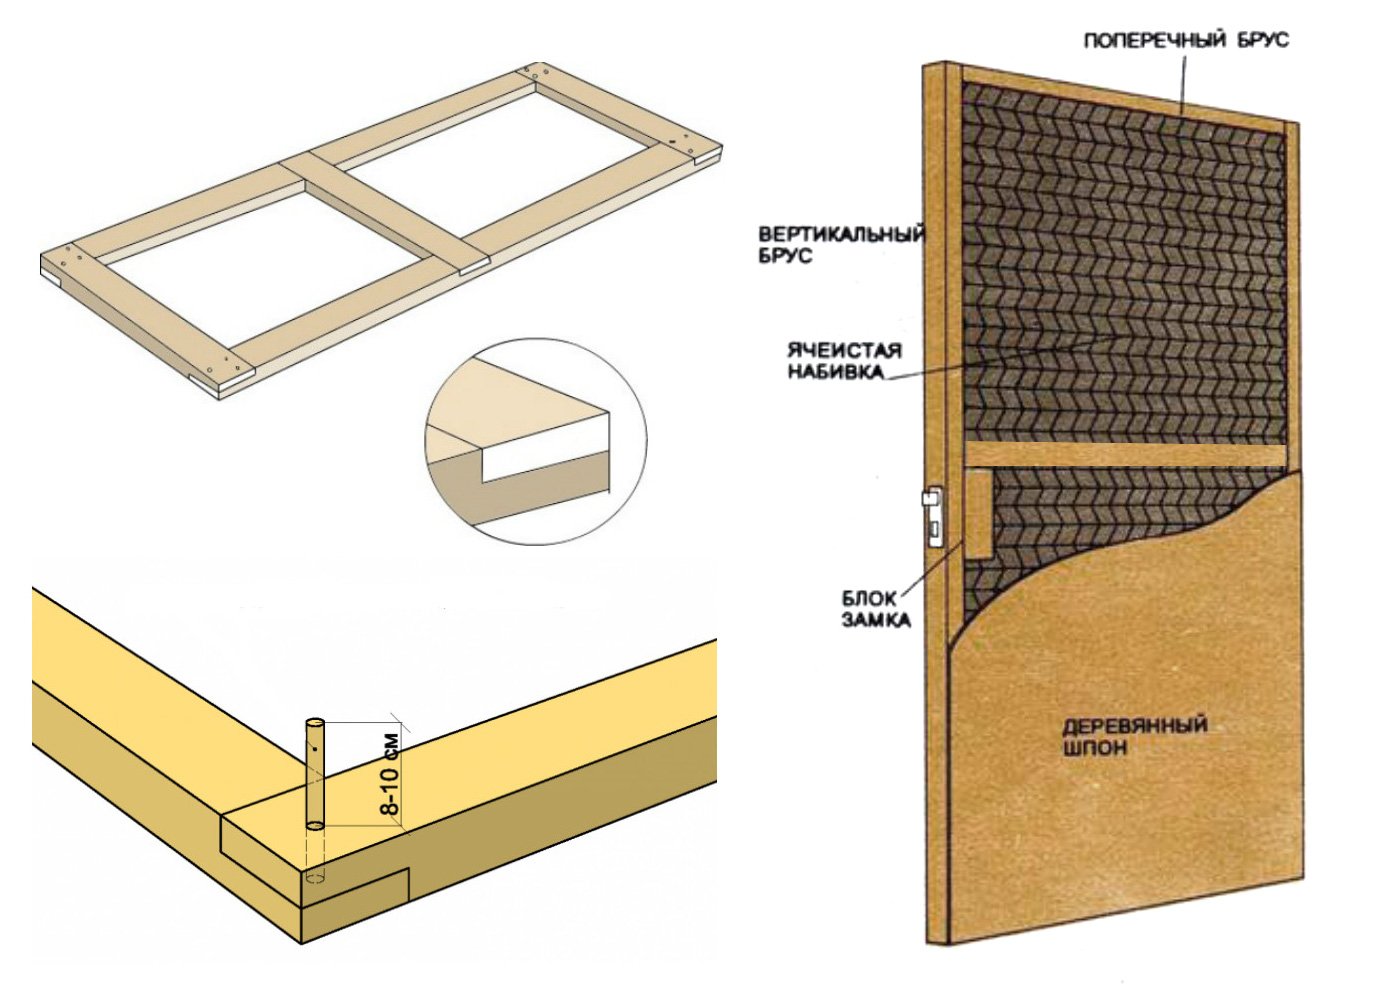 Производство деревянных дверей: технология и этапы изготовления